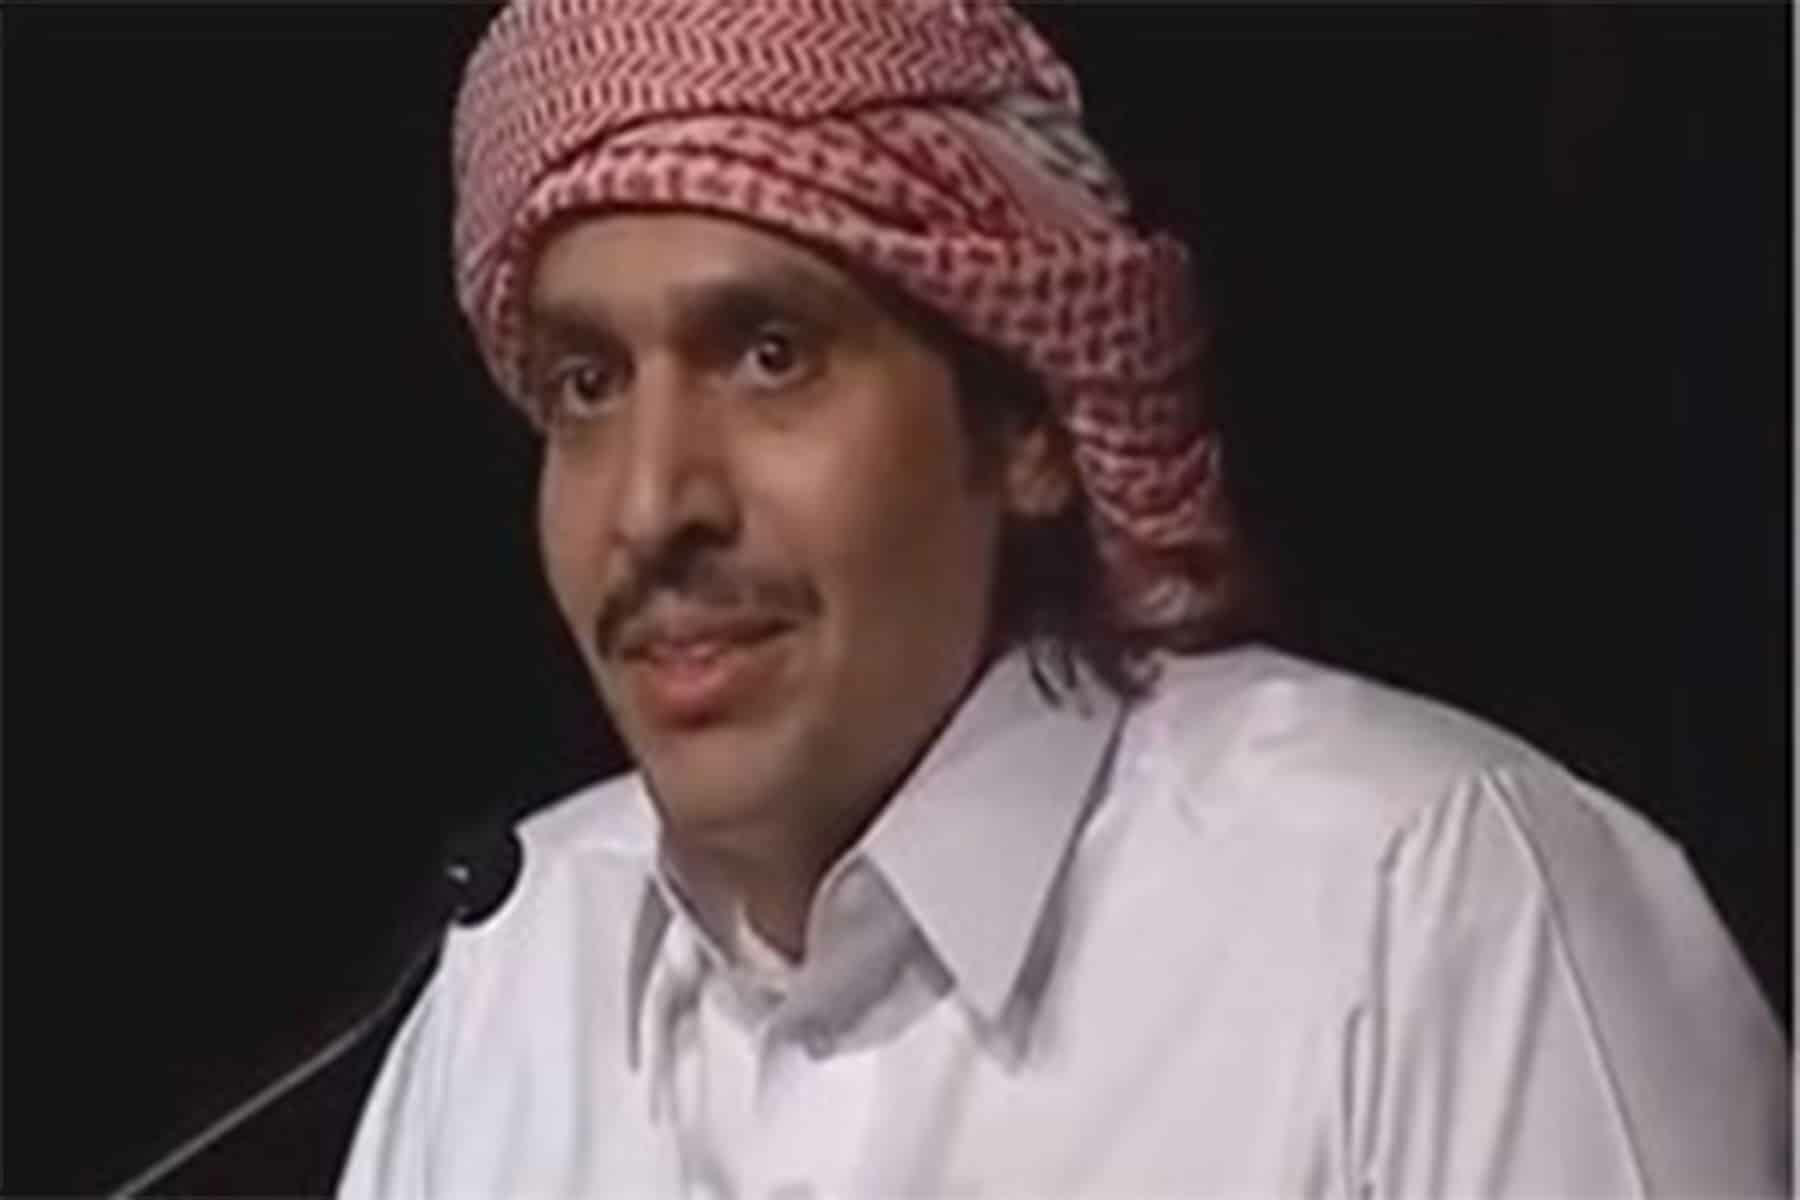 الشاعر القطري ابن الذيب يسخر من نواب الكويت بعد تعليق مجلس الأمة ويثير جدلا (فيديو)